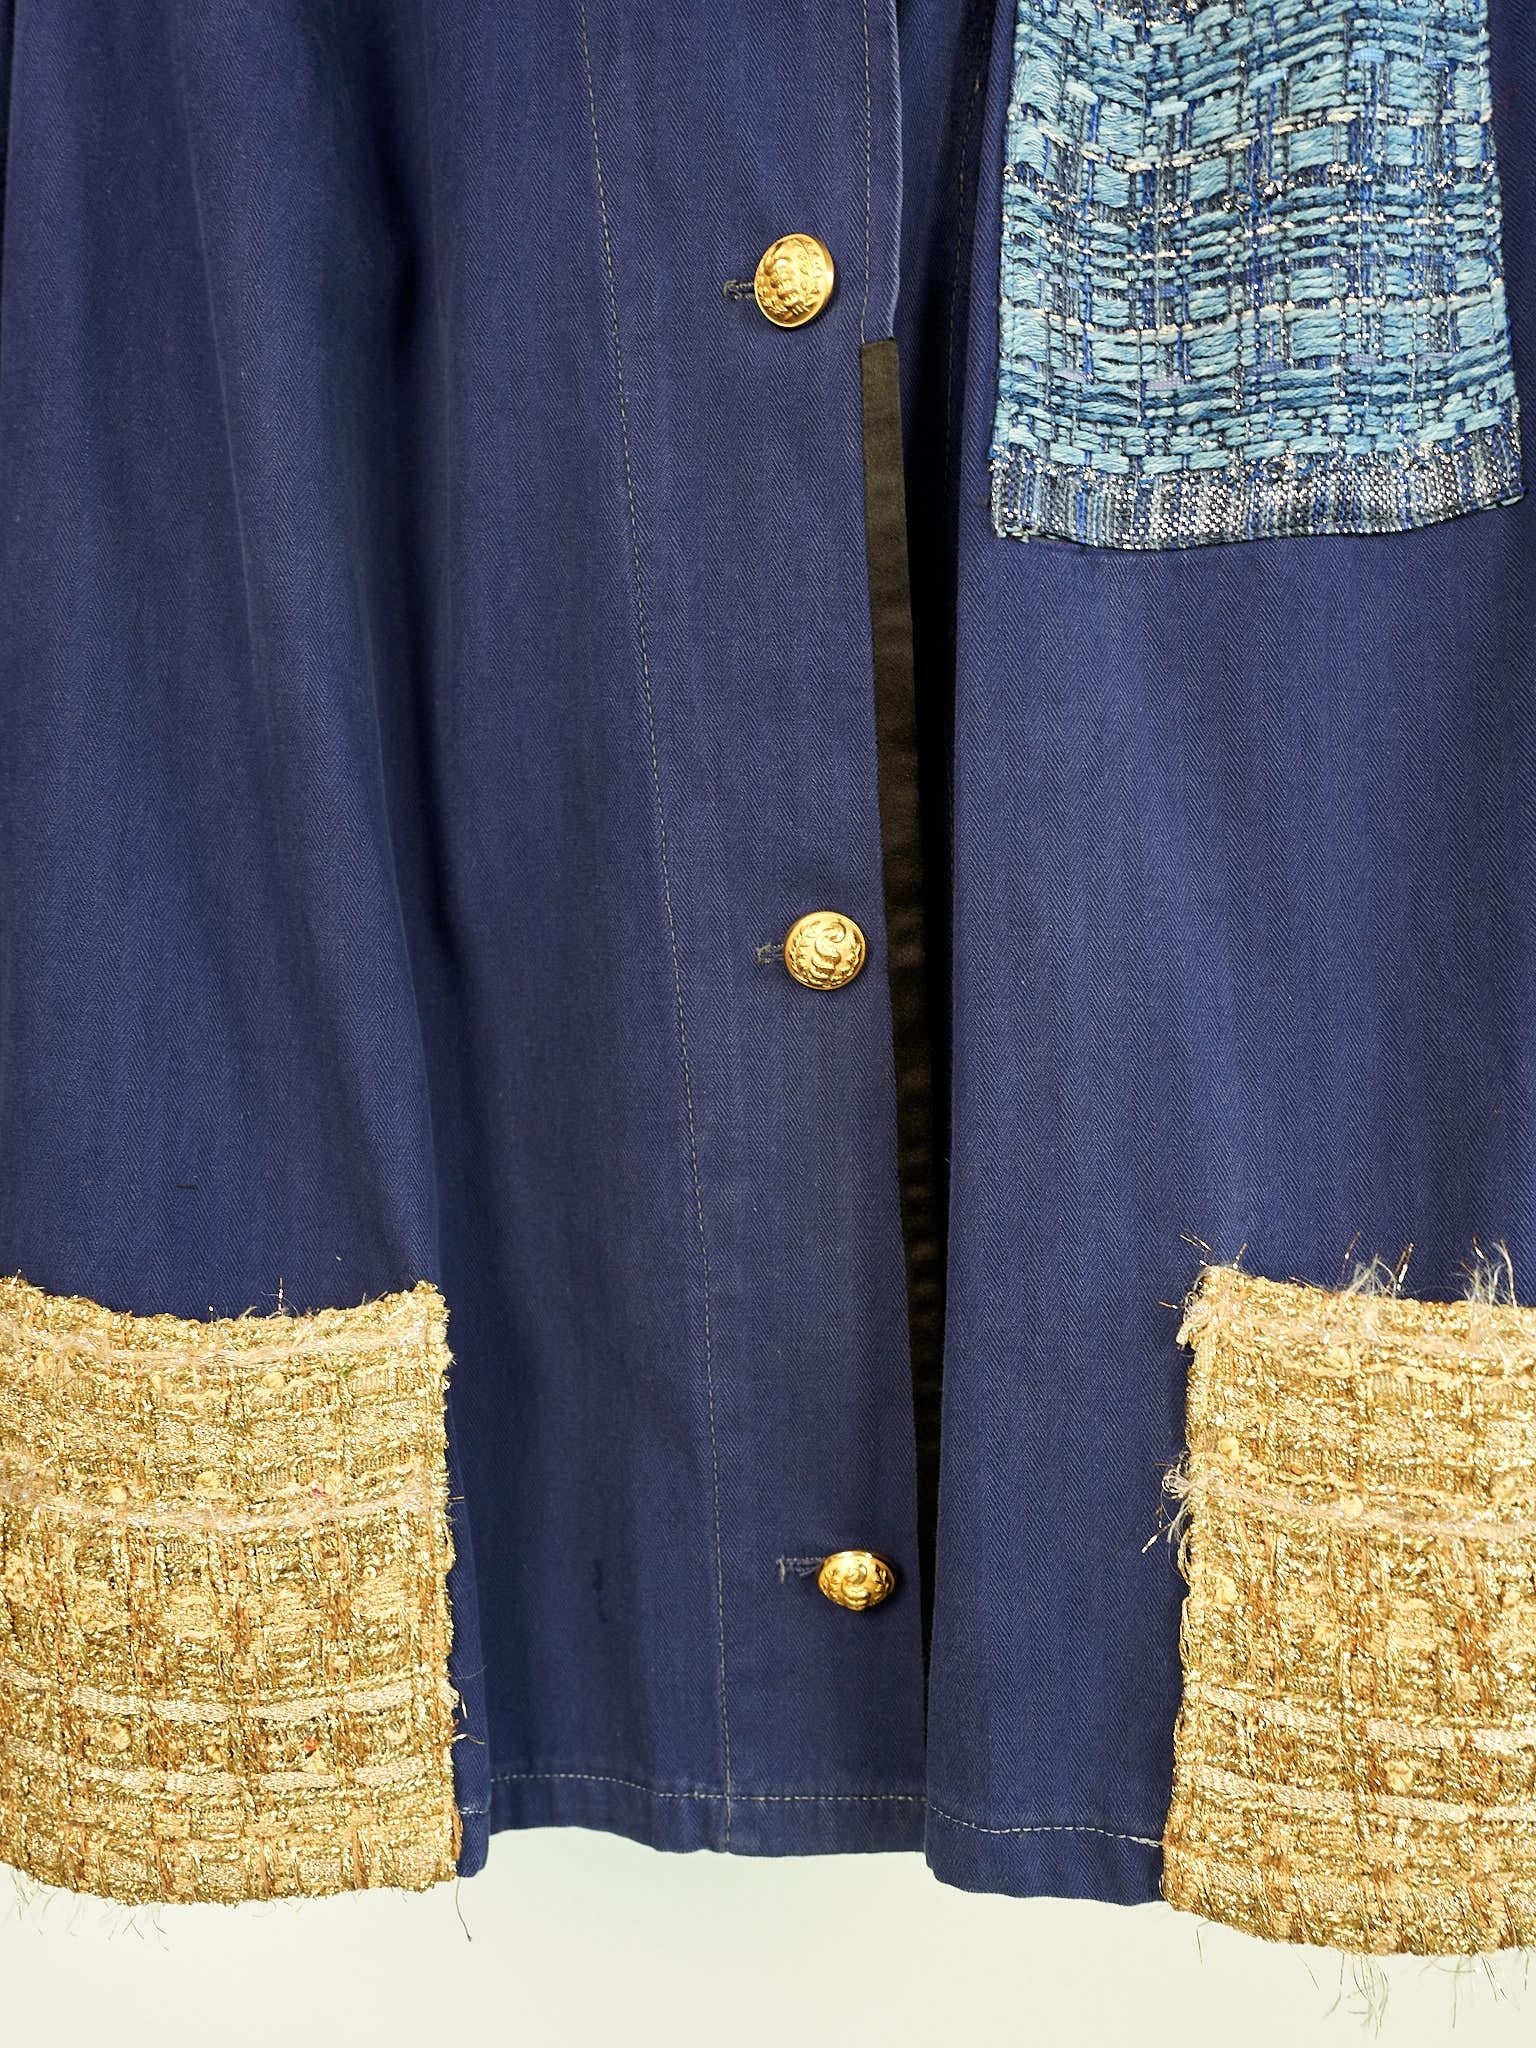 Purple Blue Jacket Gold Lurex Tweed Jacket Work Wear France Repurposed Medium